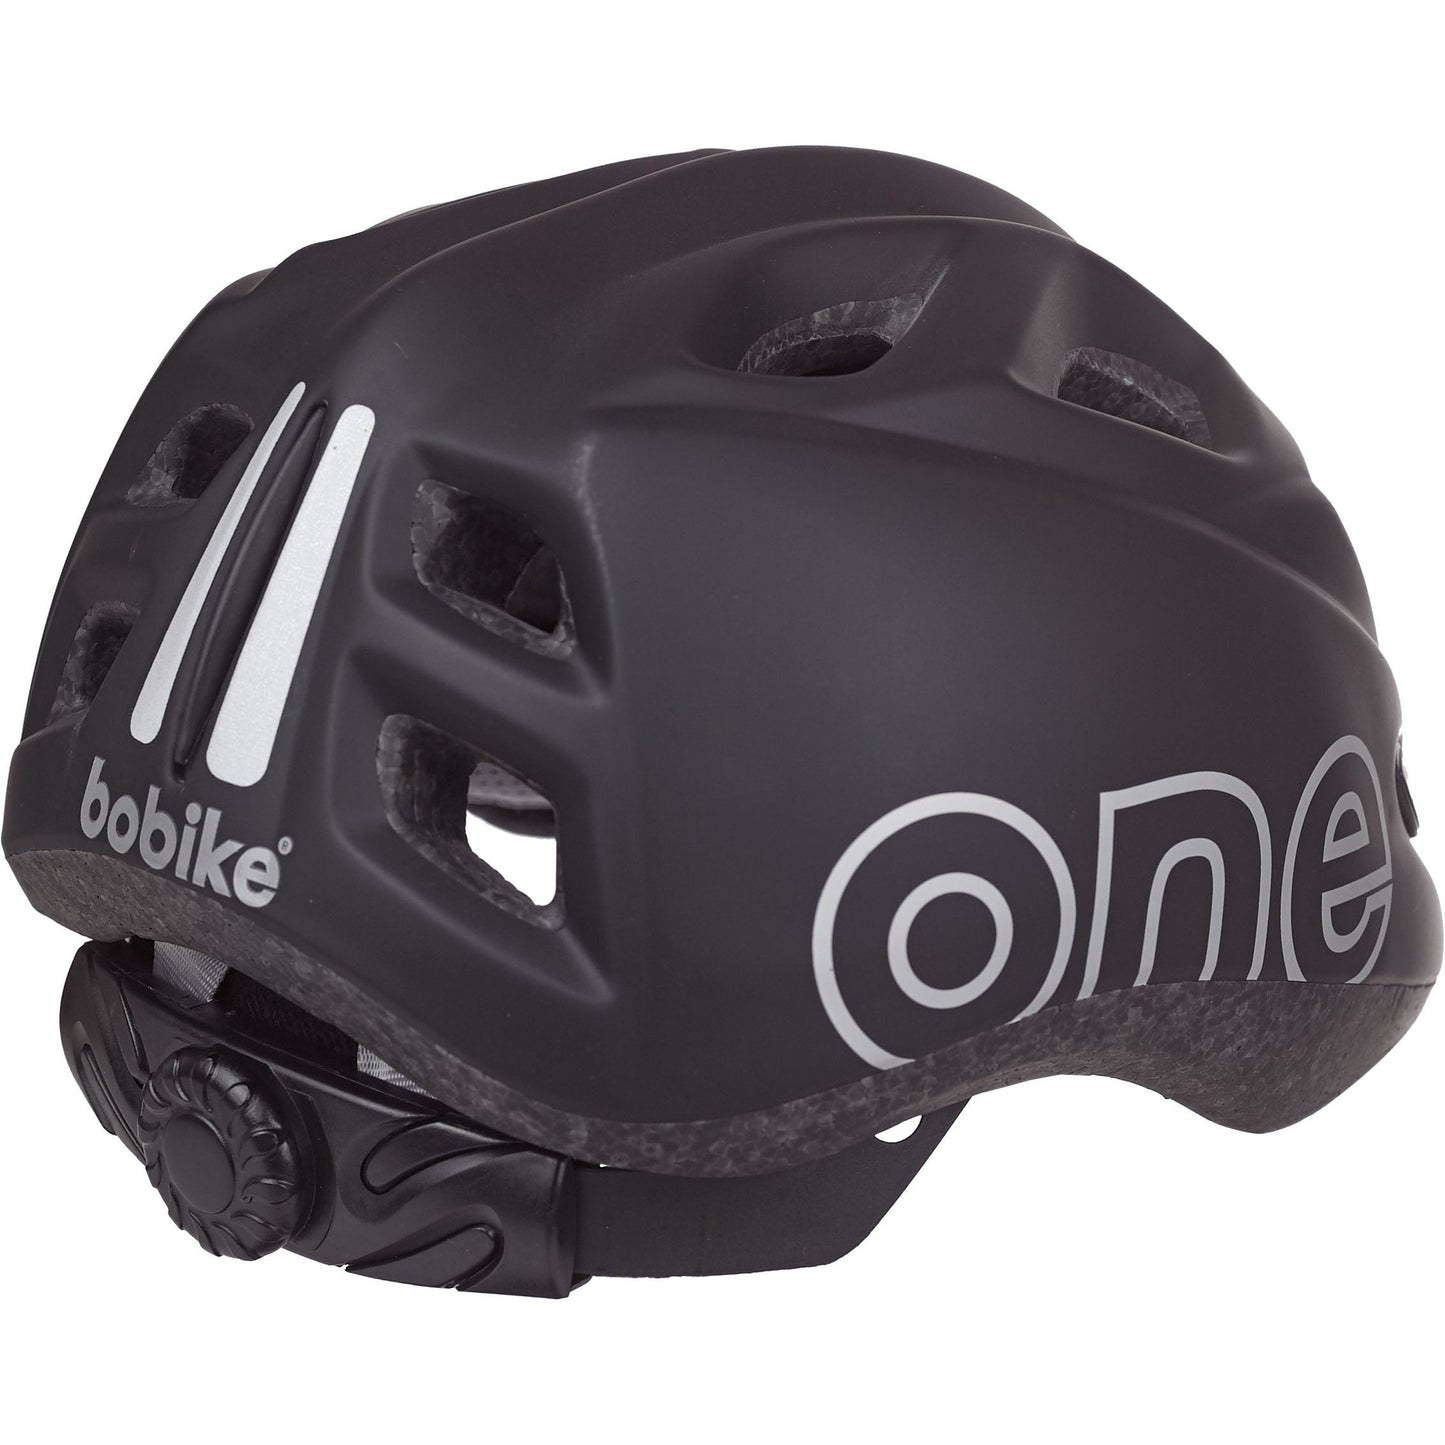 One Plus helm 48-52 cm zwart maat XS